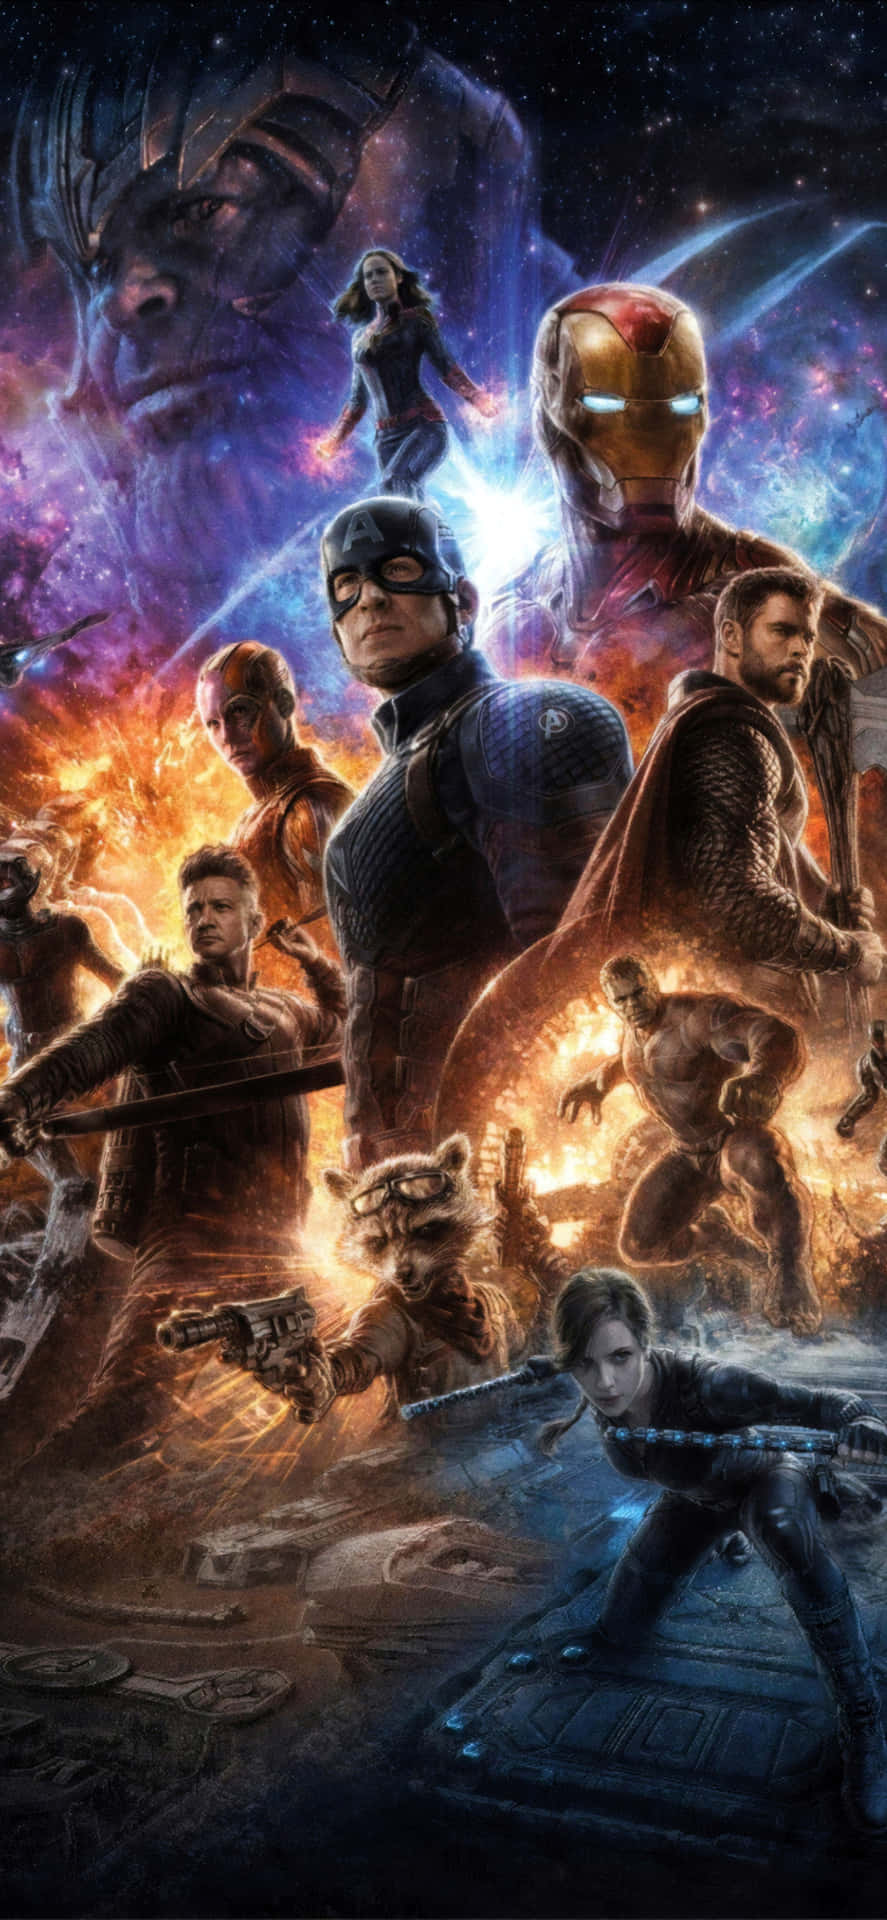 Vær en del af helte og #værenavenger med den nye Avengers Endgame Iphone! Wallpaper